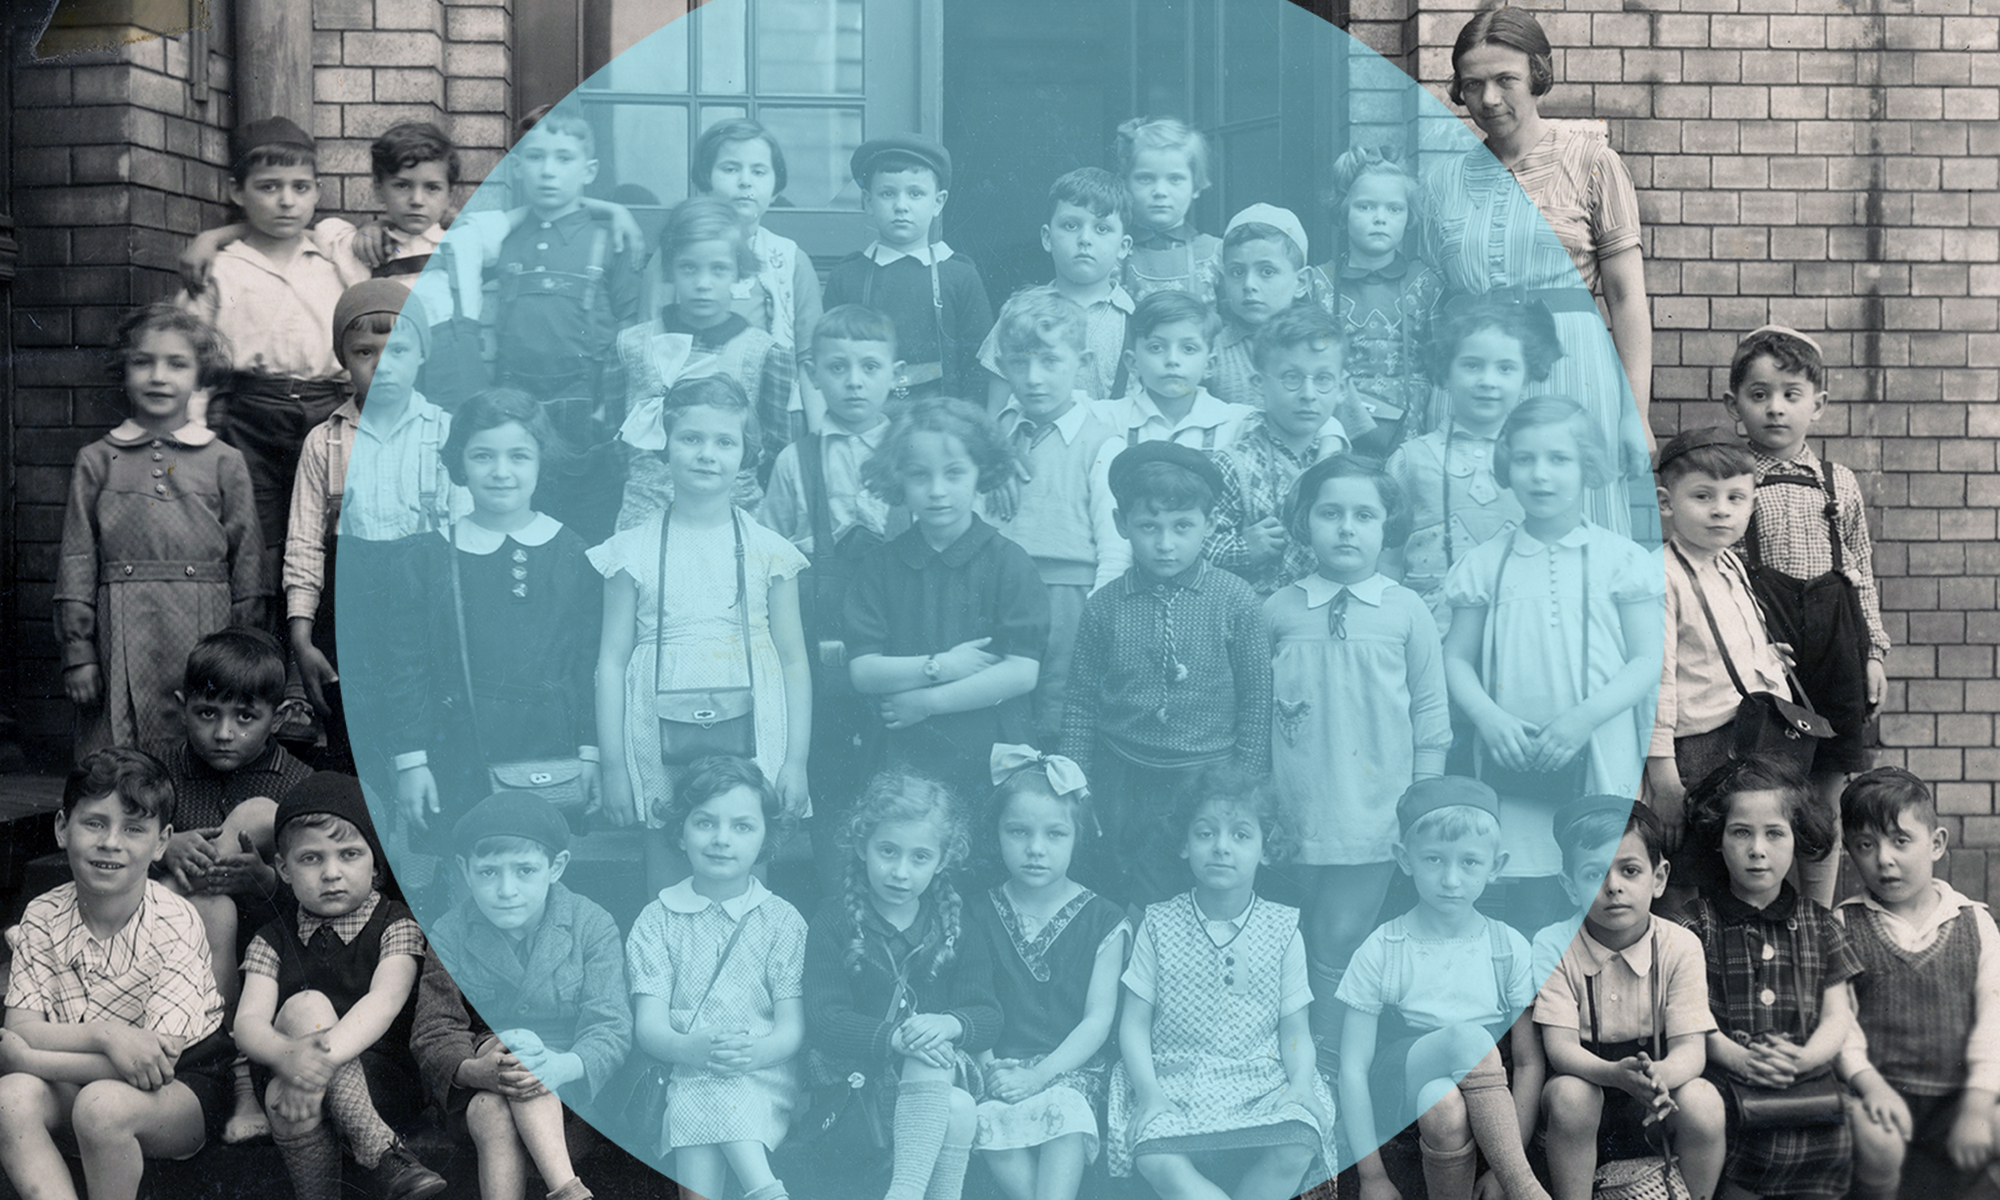 Ein künstlerisch leicht bearbeitetes Klassenfoto einer jüdischen Schulklasse in Breslau 1938. Das Foto stammt aus dem Privatbesitz v. Gerda Bikales, geb. Bierzońska, u. wird im Film "Wir sind Juden aus Breslau" verwendet. (c) Karin Kaper Film